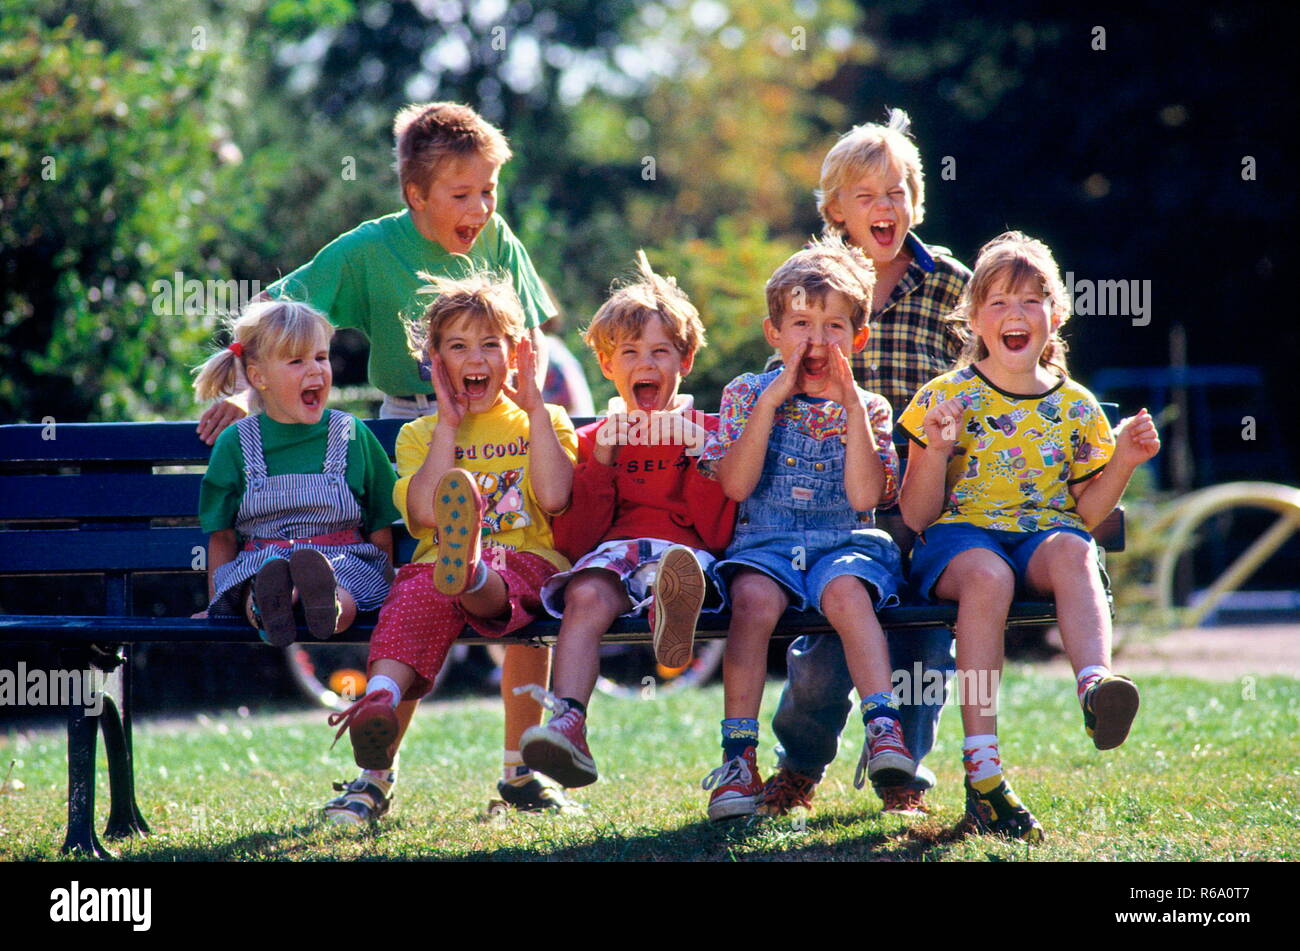 Portrait, Parkszene - welness, 7 Kinder, 4 bis 10 Jahre alt, sitzen im Sommer auf einer Parkbank Banque D'Images